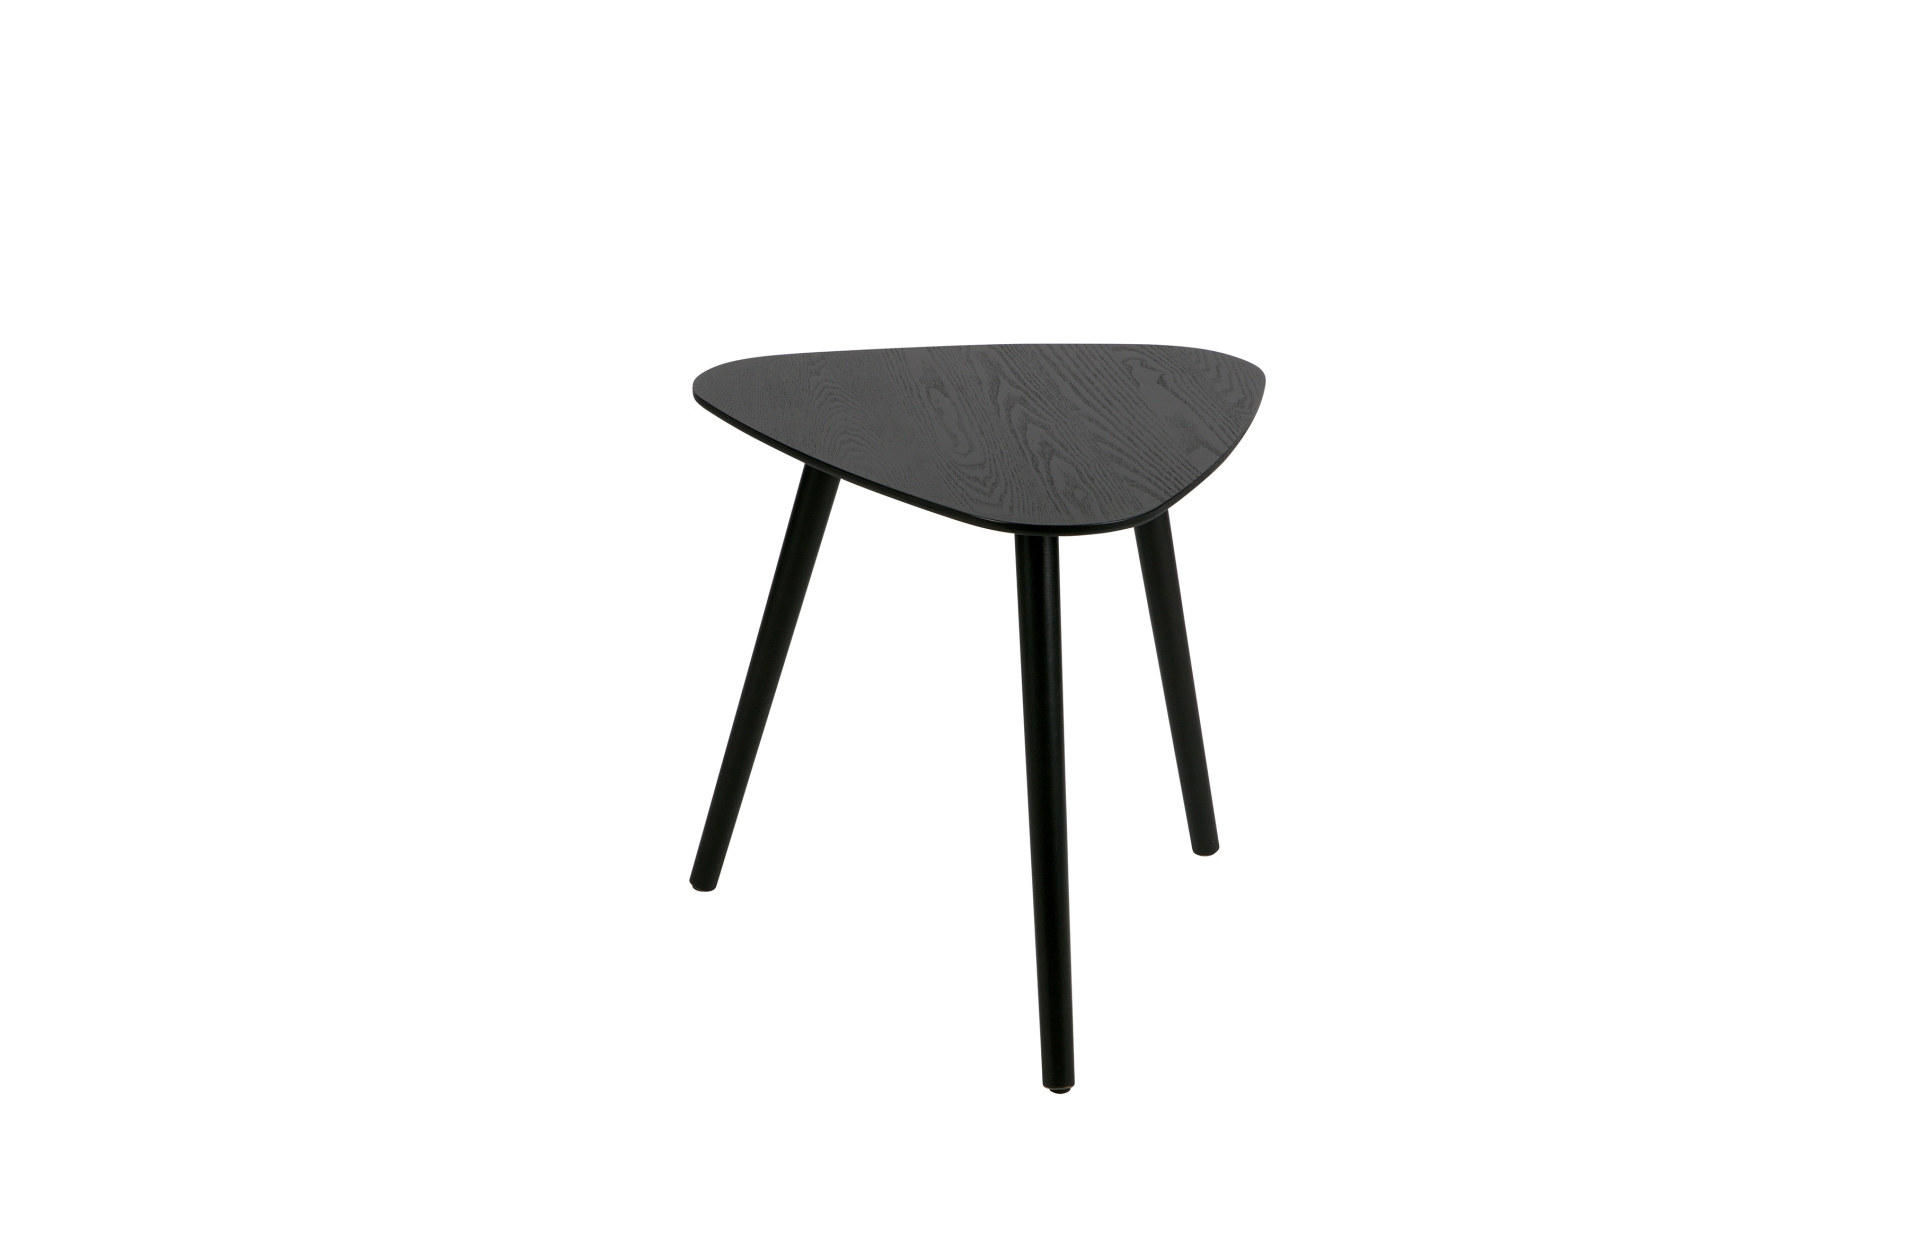 Der Beistelltisch Nila besitzt eine dreieckige Form. Die Tischplatte wurde aus Eschenholz gefertigt und die Beine aus Pinienholz. Der Beistelltisch hat eine Schwarze Farbe.